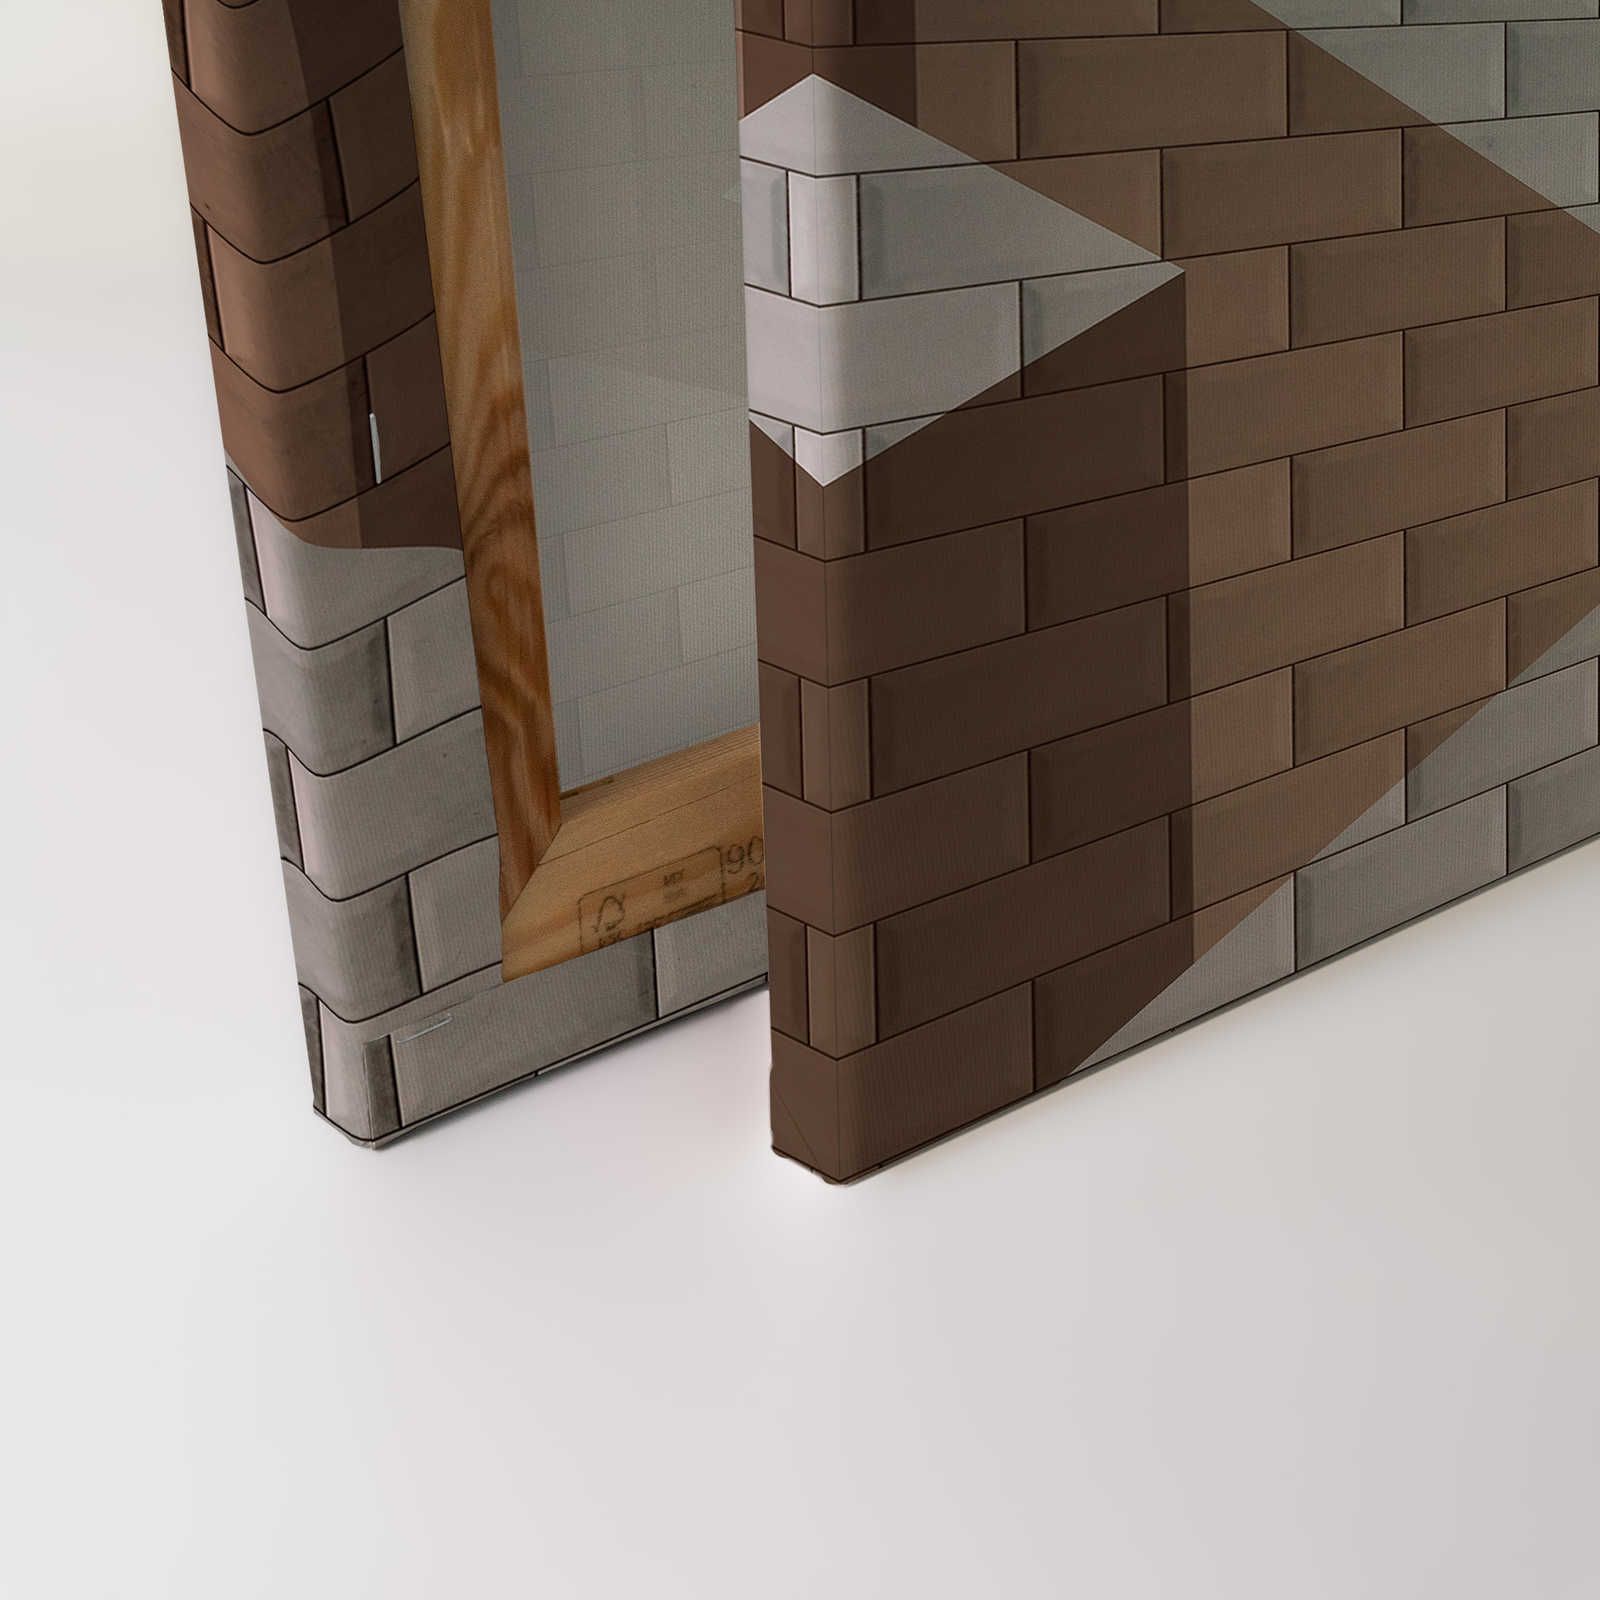             Leinwandbild Ziegelsteinmauer mit Block-Bemalung | beige – 0,90 m x 0,60 m
        